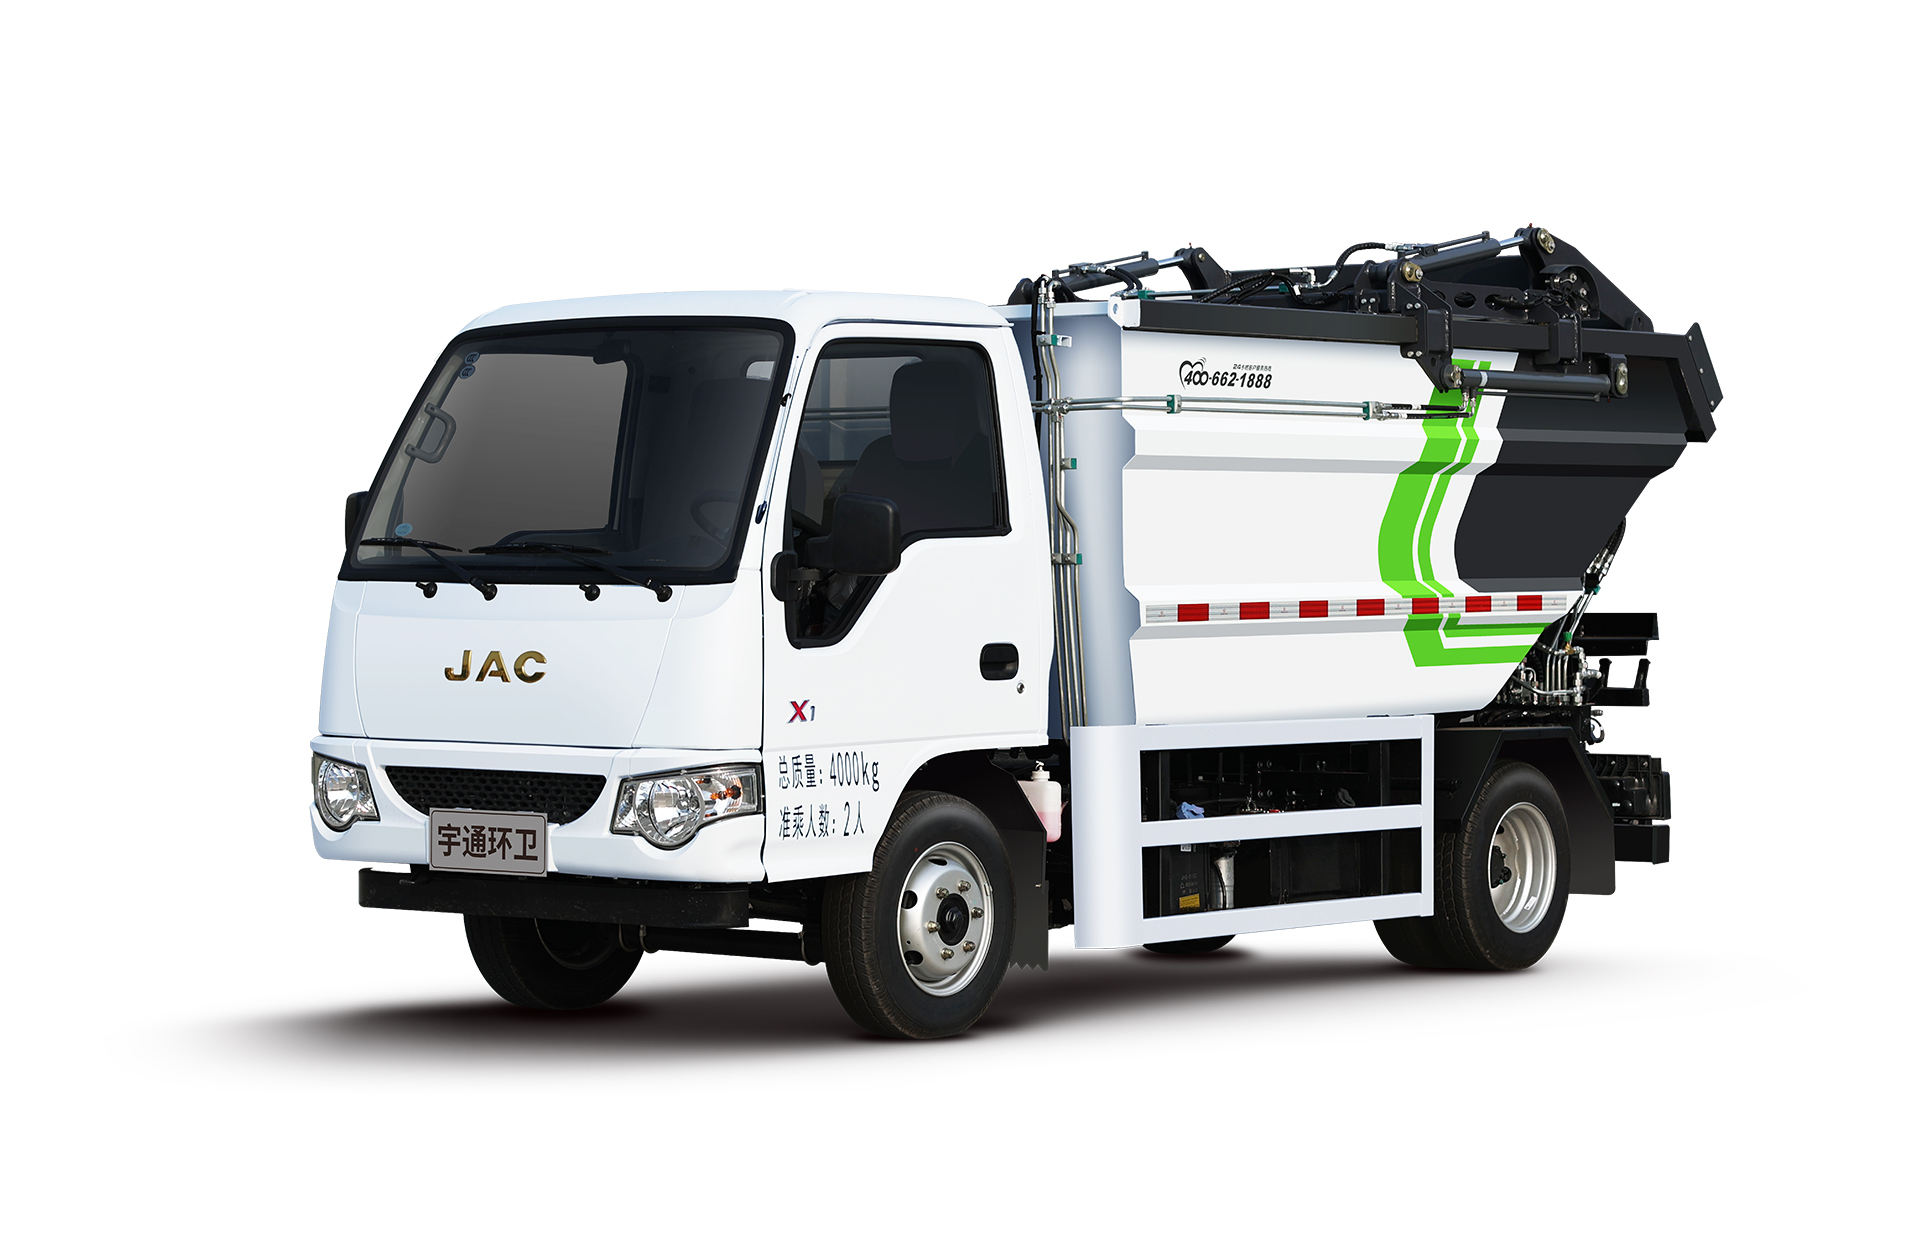 4t自装卸式垃圾车 宇通环卫自装卸式垃圾车主要具备小巧灵活、密封性、装载能力强等主要特点。